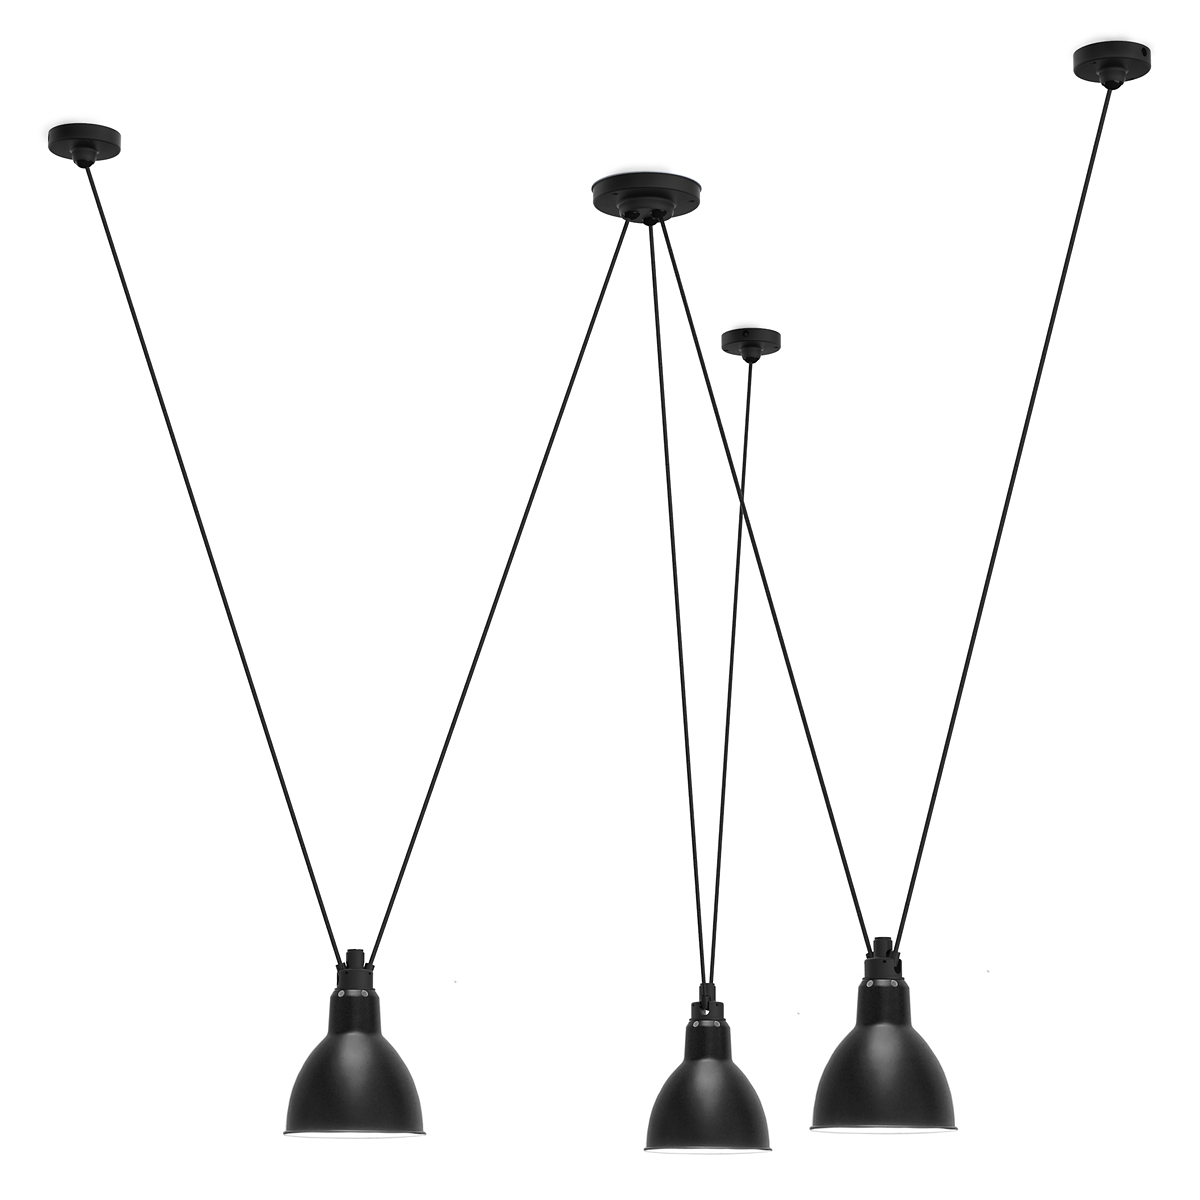 Dreifach-Pendelleuchte Les Acrobates N° 325: Dreifach-Trapez-Pendelleuchte N° 325 mit drei Schirmen ROUND L in Schwarz